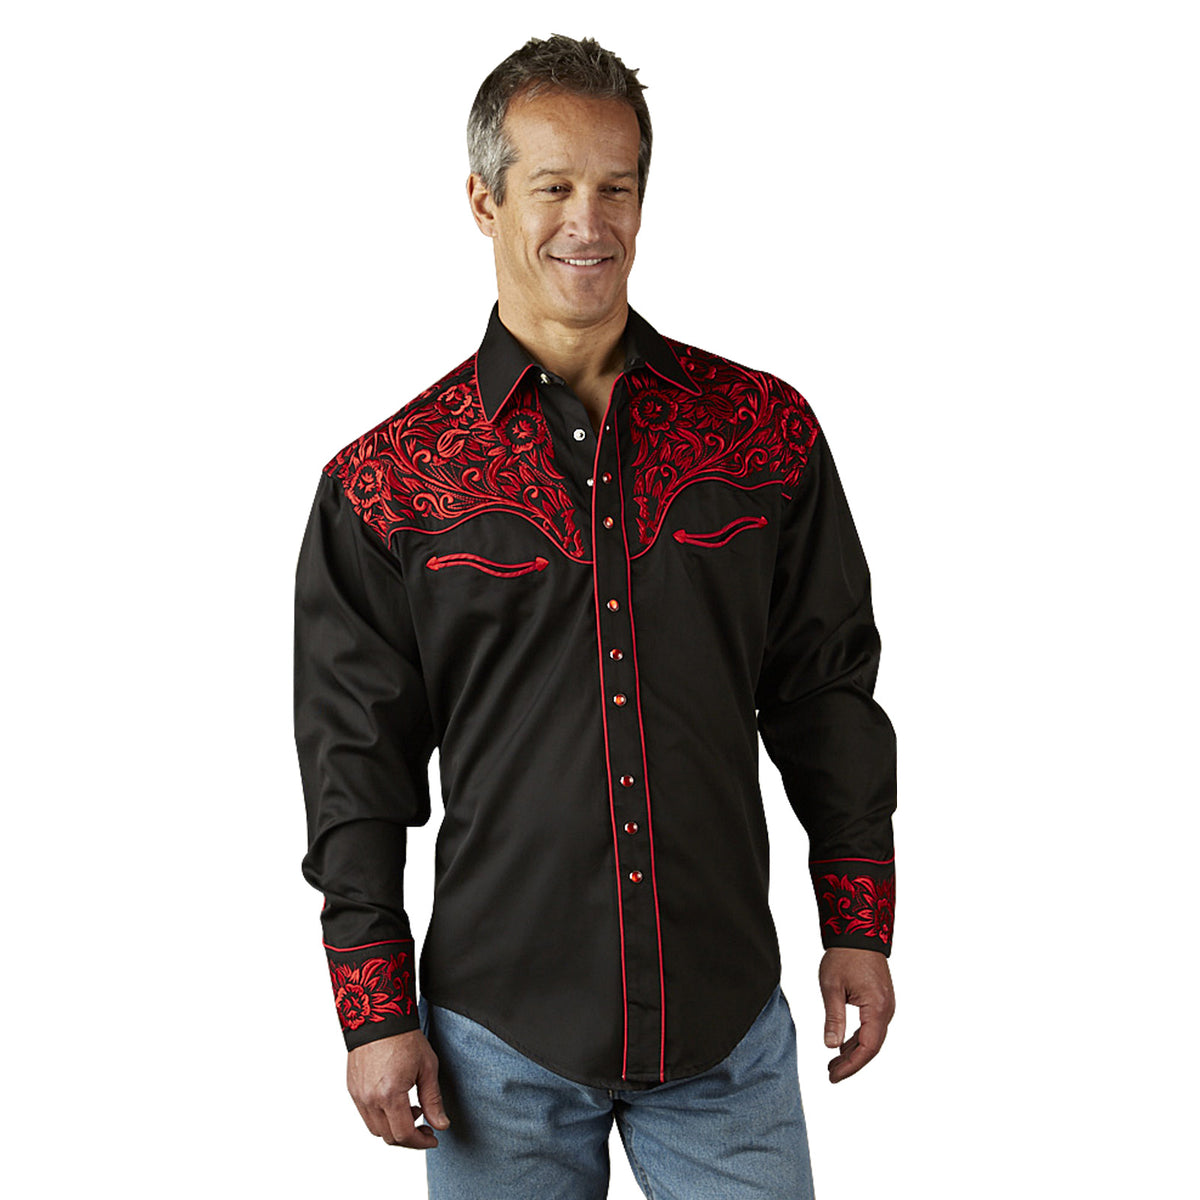 Rockmount Men's Vintage Tooling Black & Red Embroidered Western Shirt